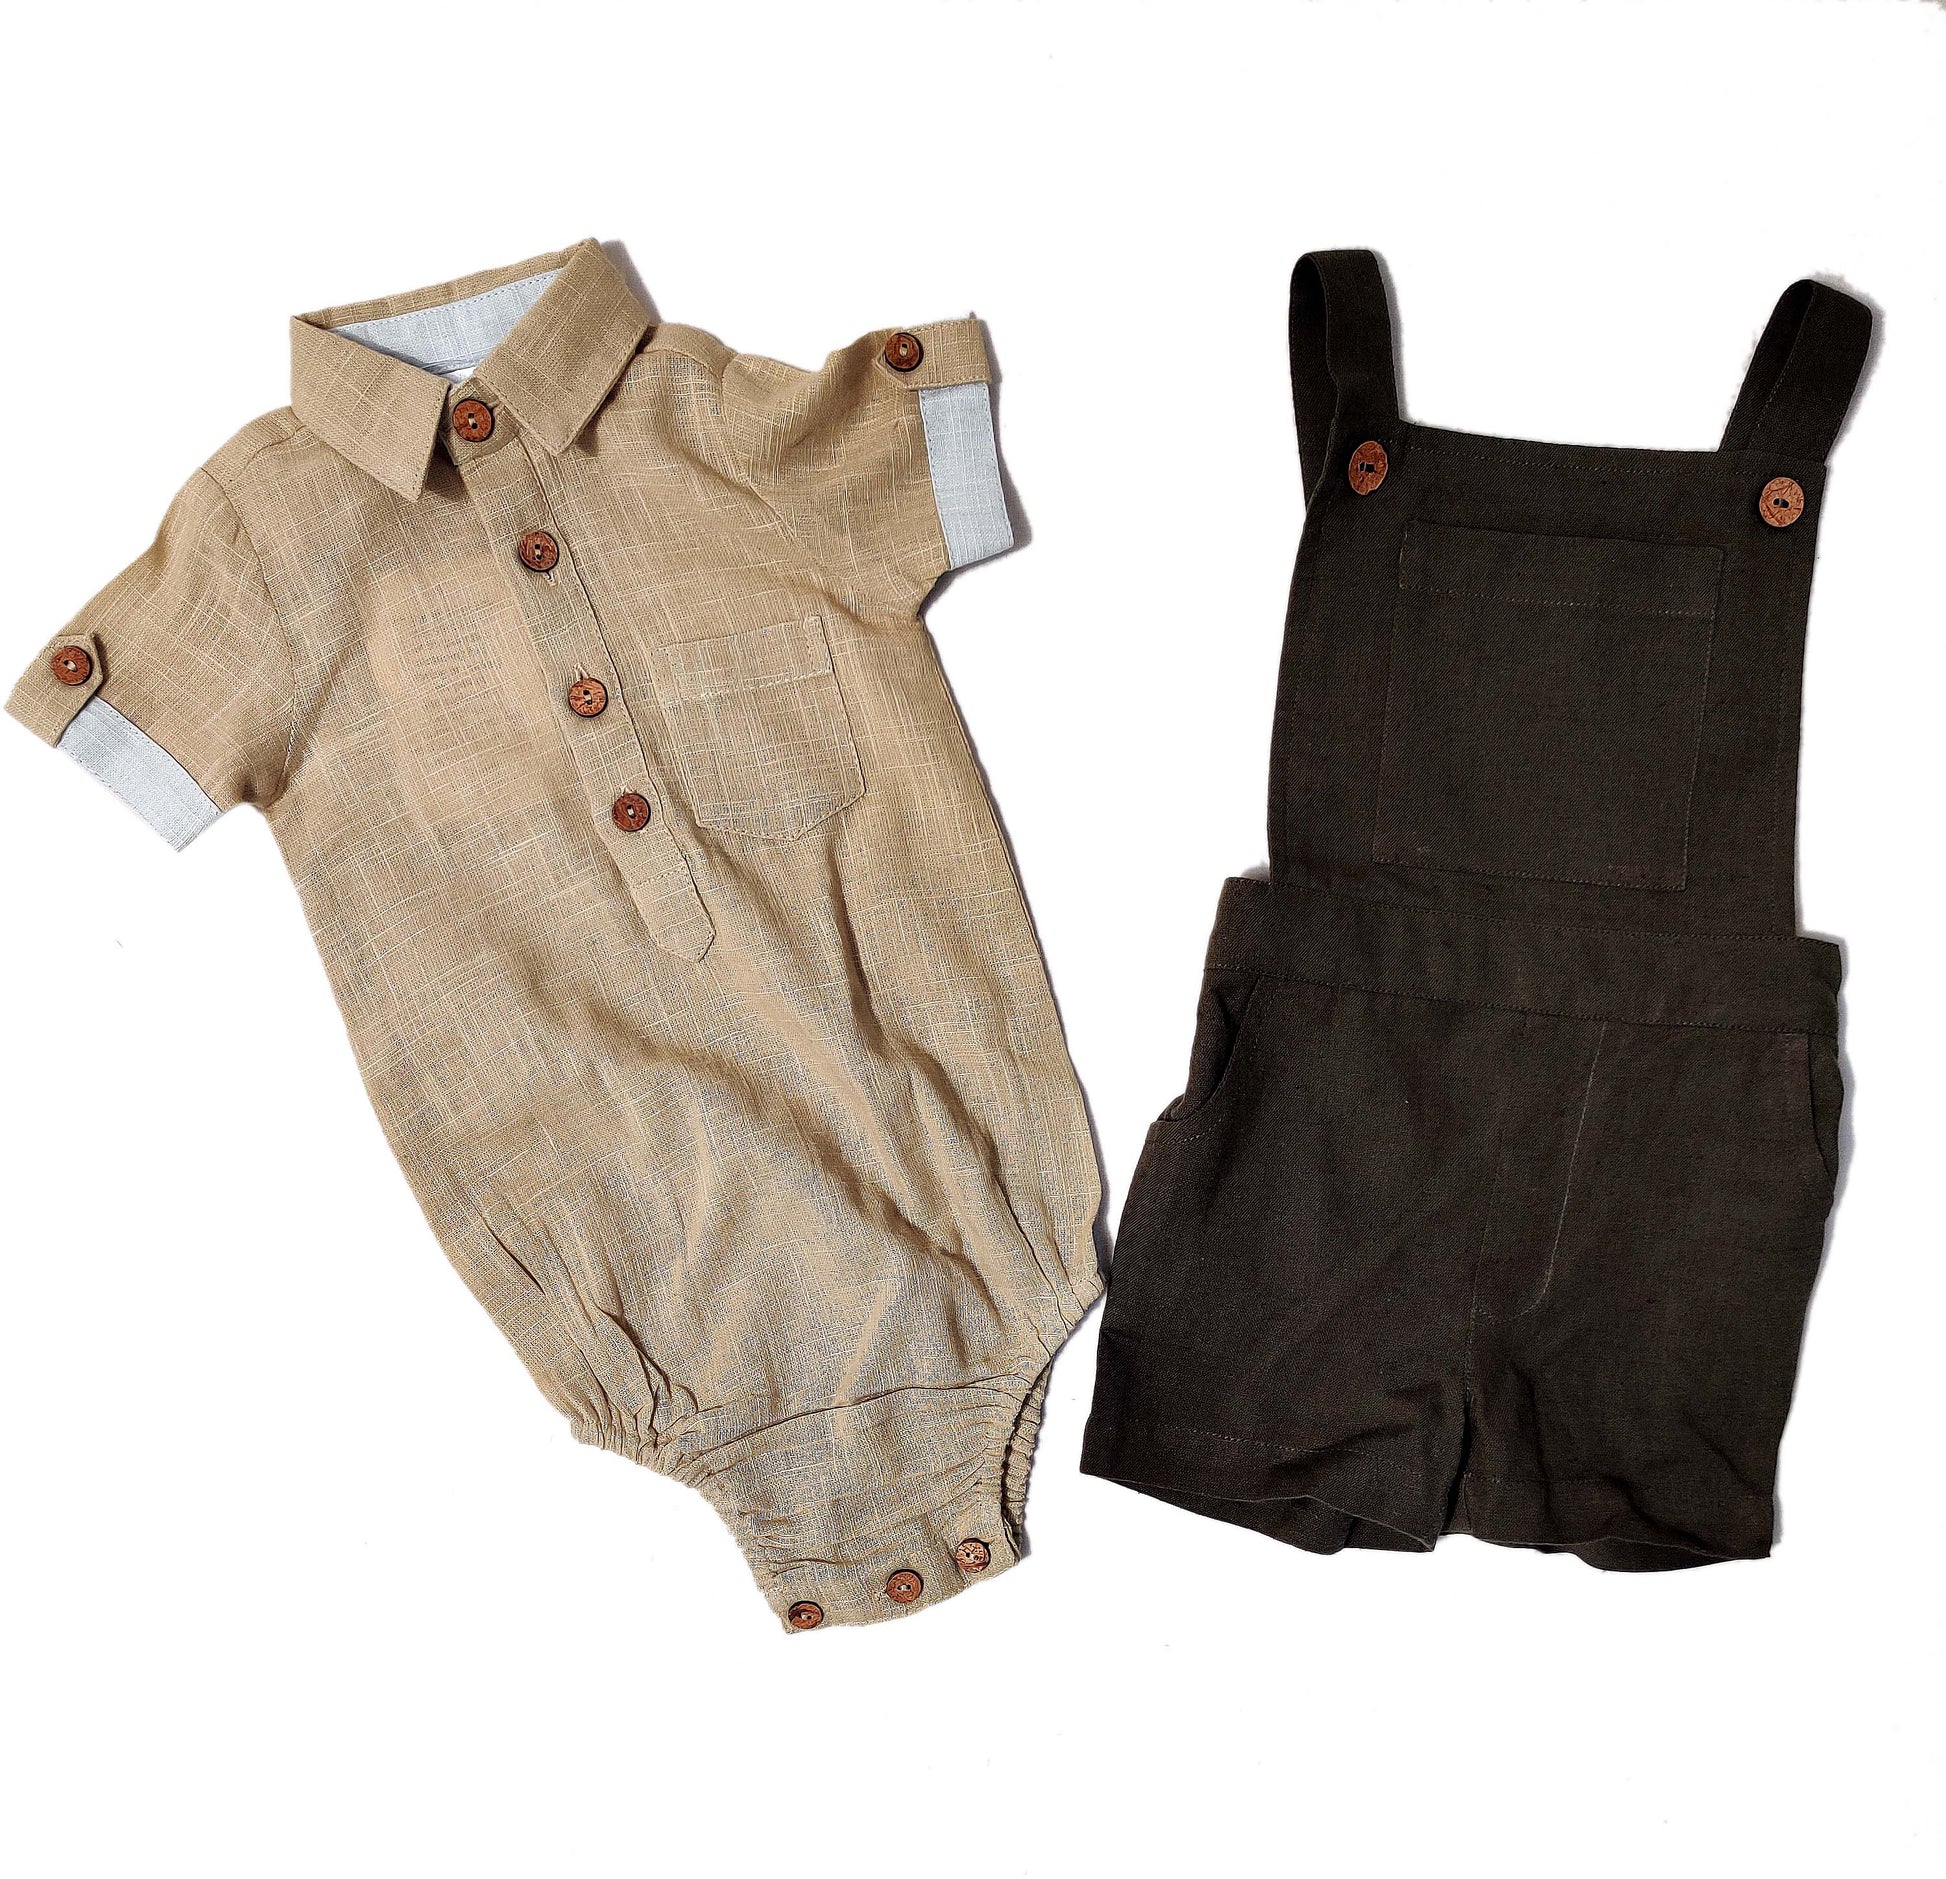 Infant Romper-Shirt and Overalls Set - Beige & Olive